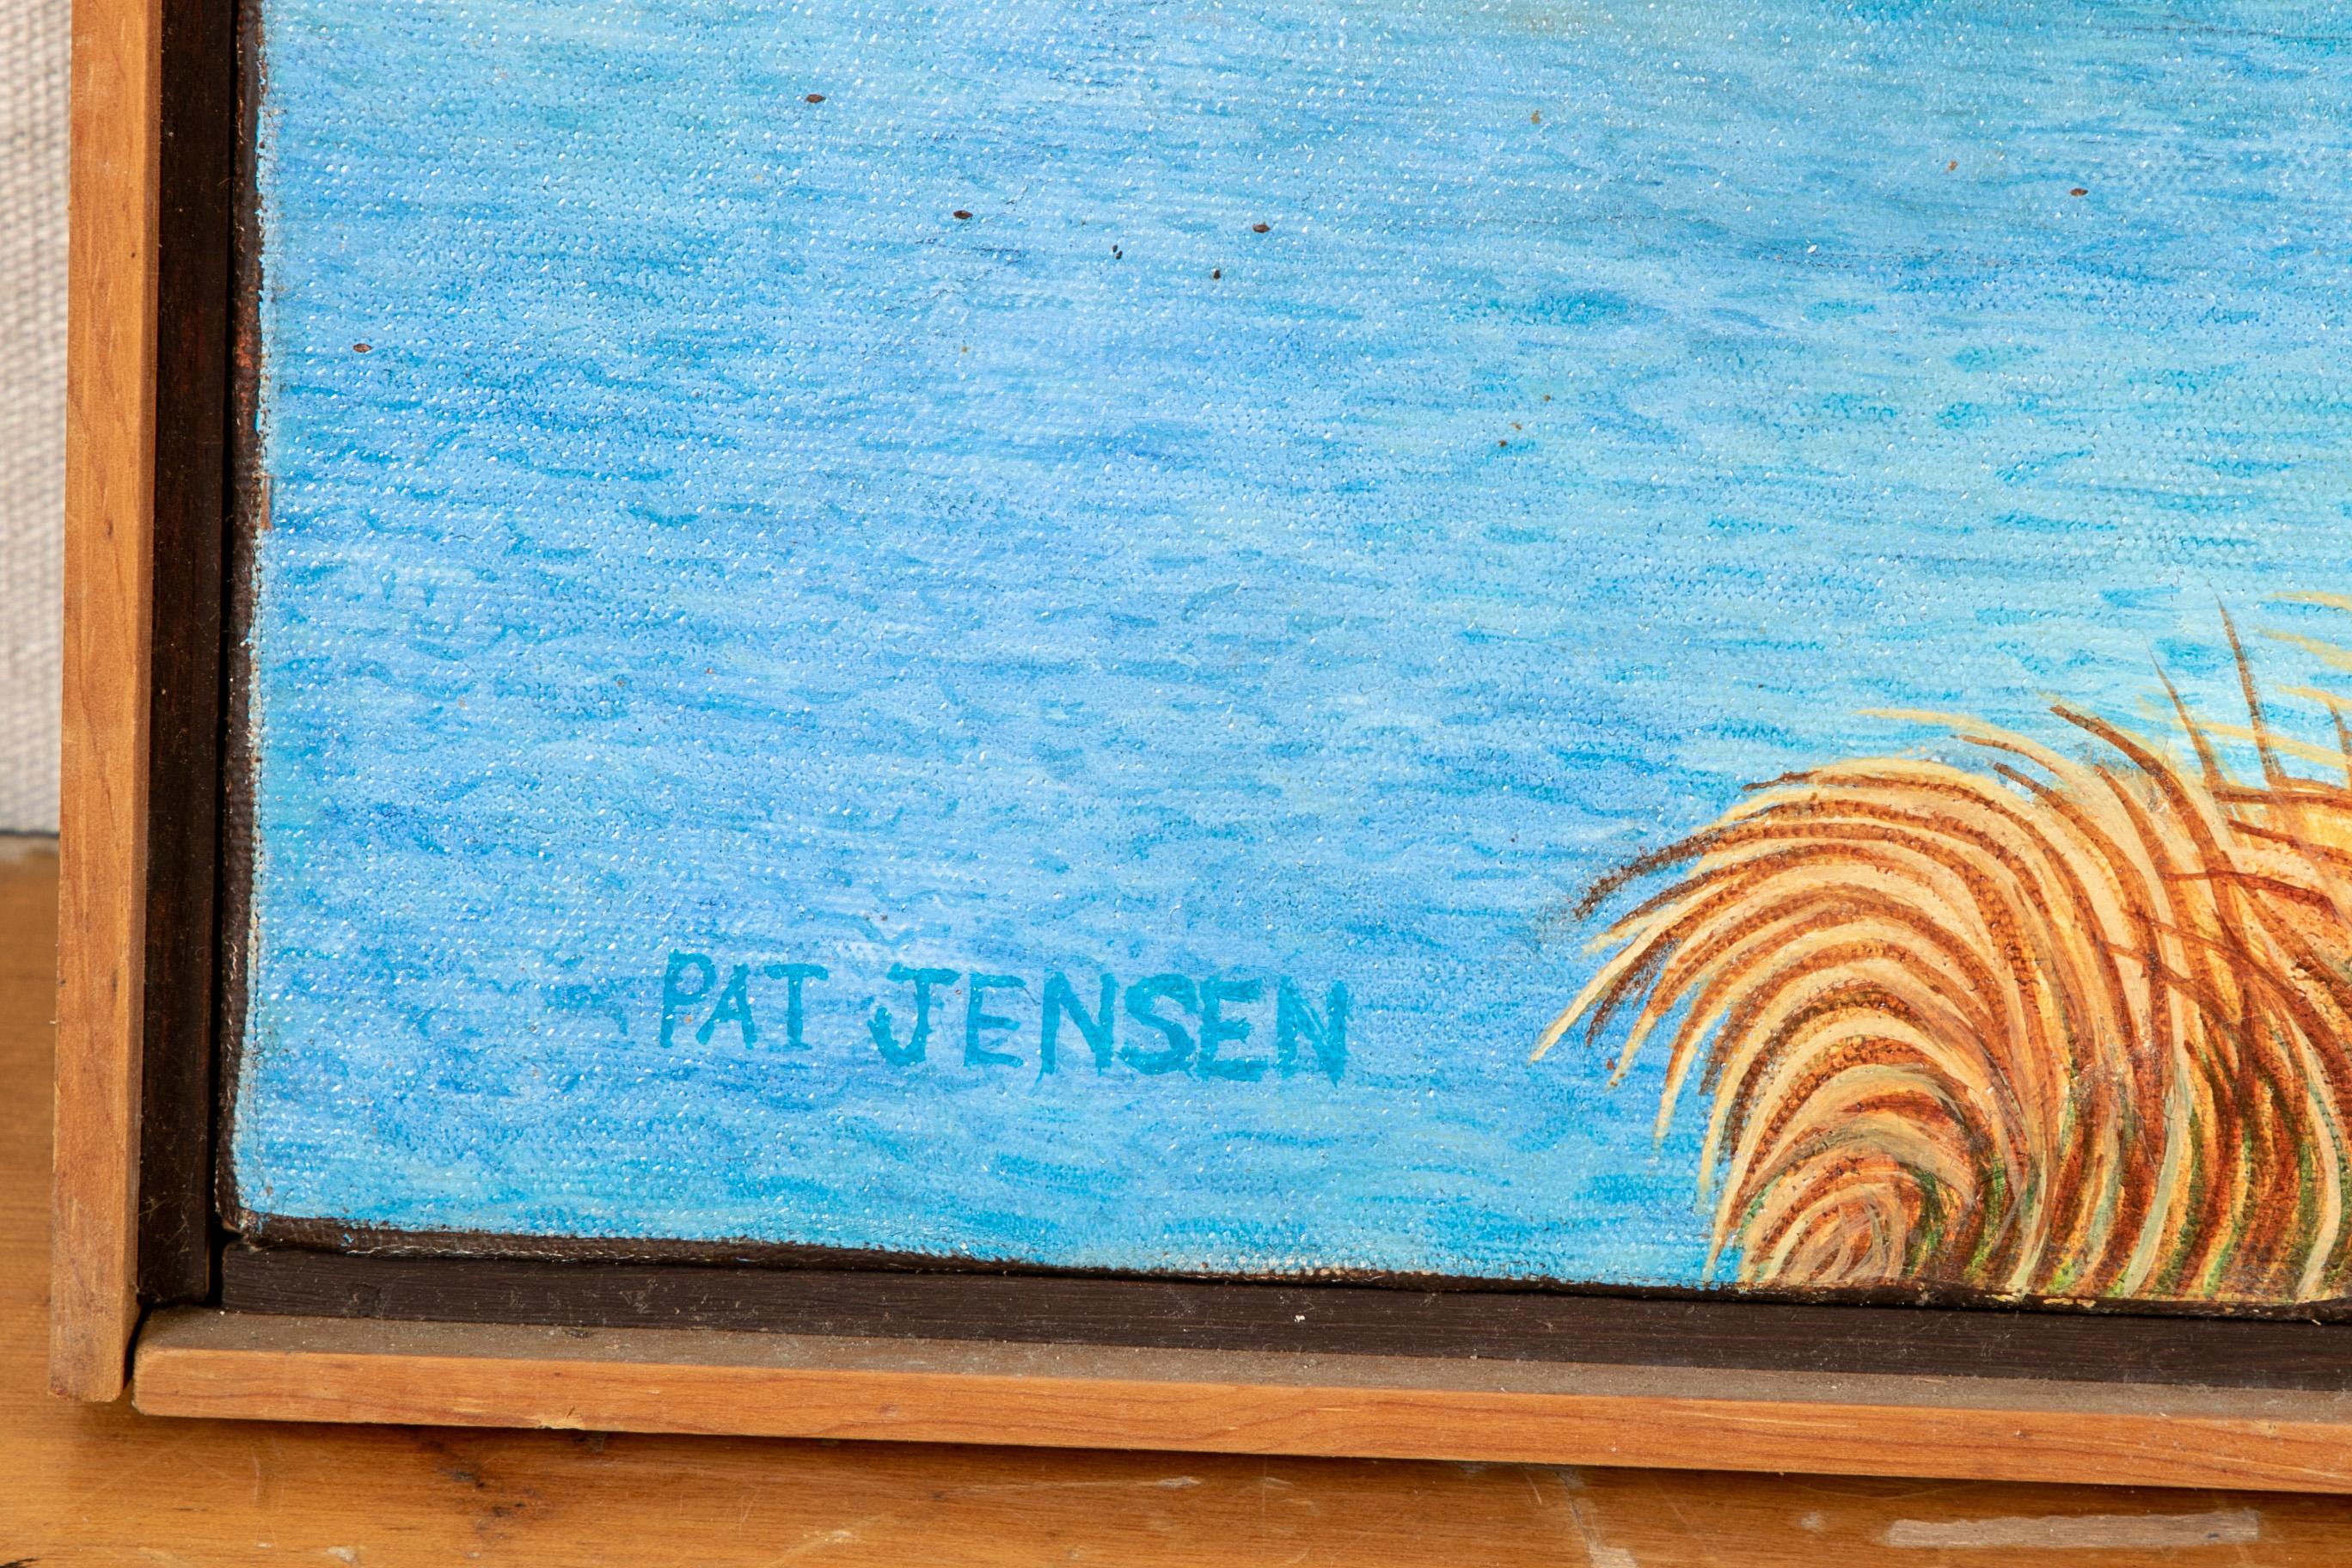 Pat Jensen, Oil On Canvas, 